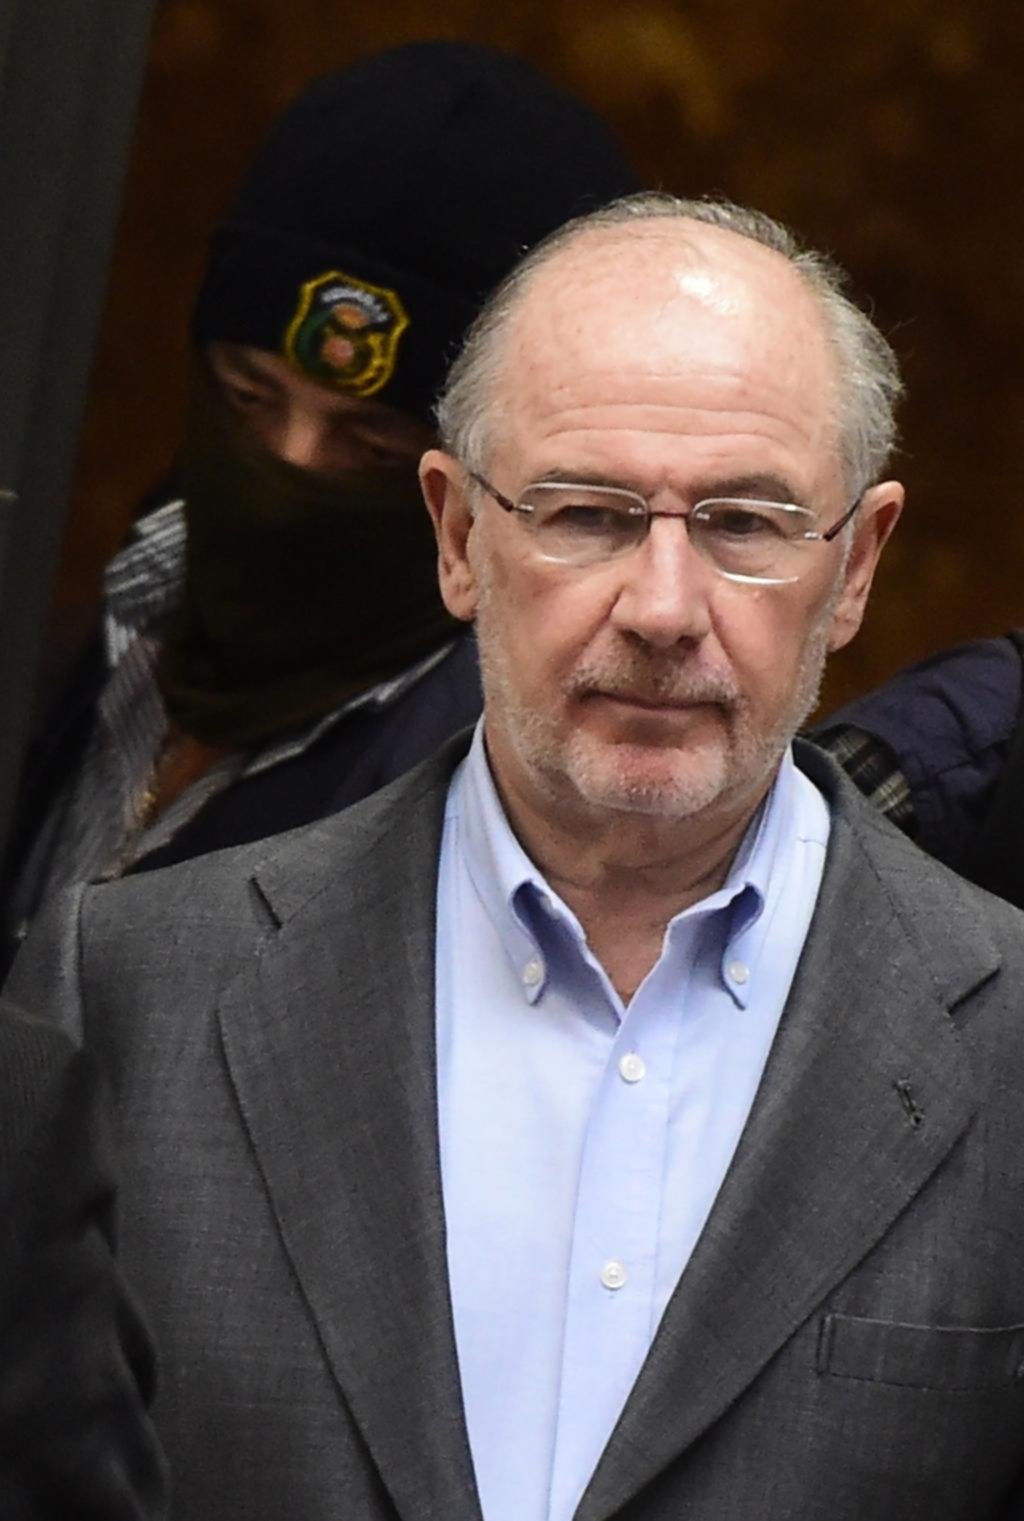 Condenan a más de 4 años de prisión al ex jefe del FMI Rodrigo Rato por fraude